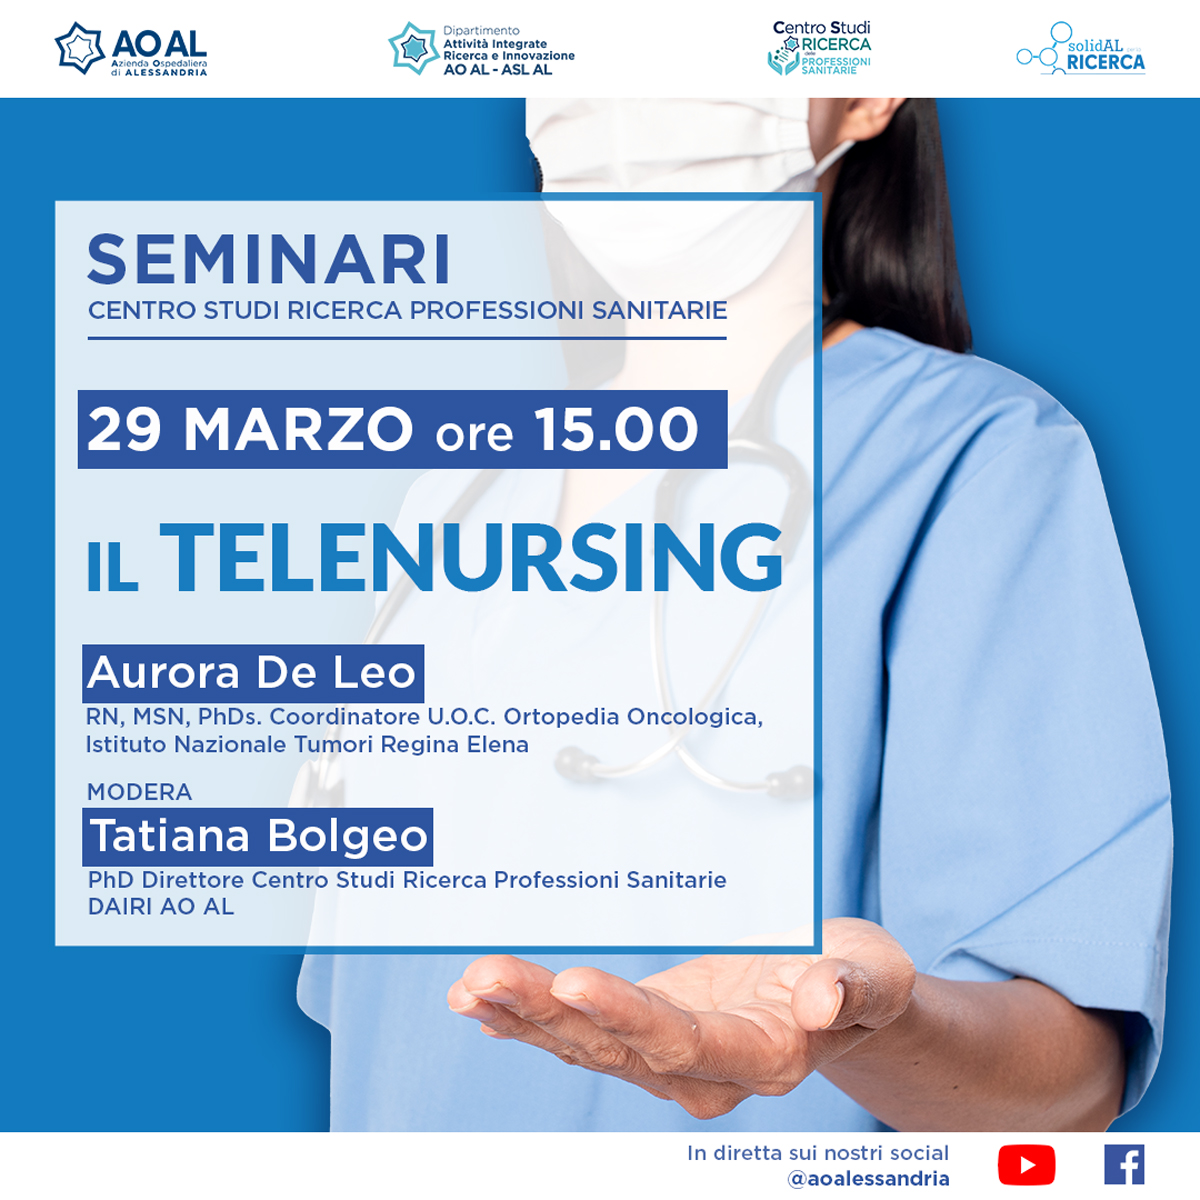 📌 Seminario del Centro Studi Professioni Sanitarie
📅29 marzo
⏰15

Segui l'evento sul #telenursing  in diretta
🌐youtube.com/live/QW10y4Rss…